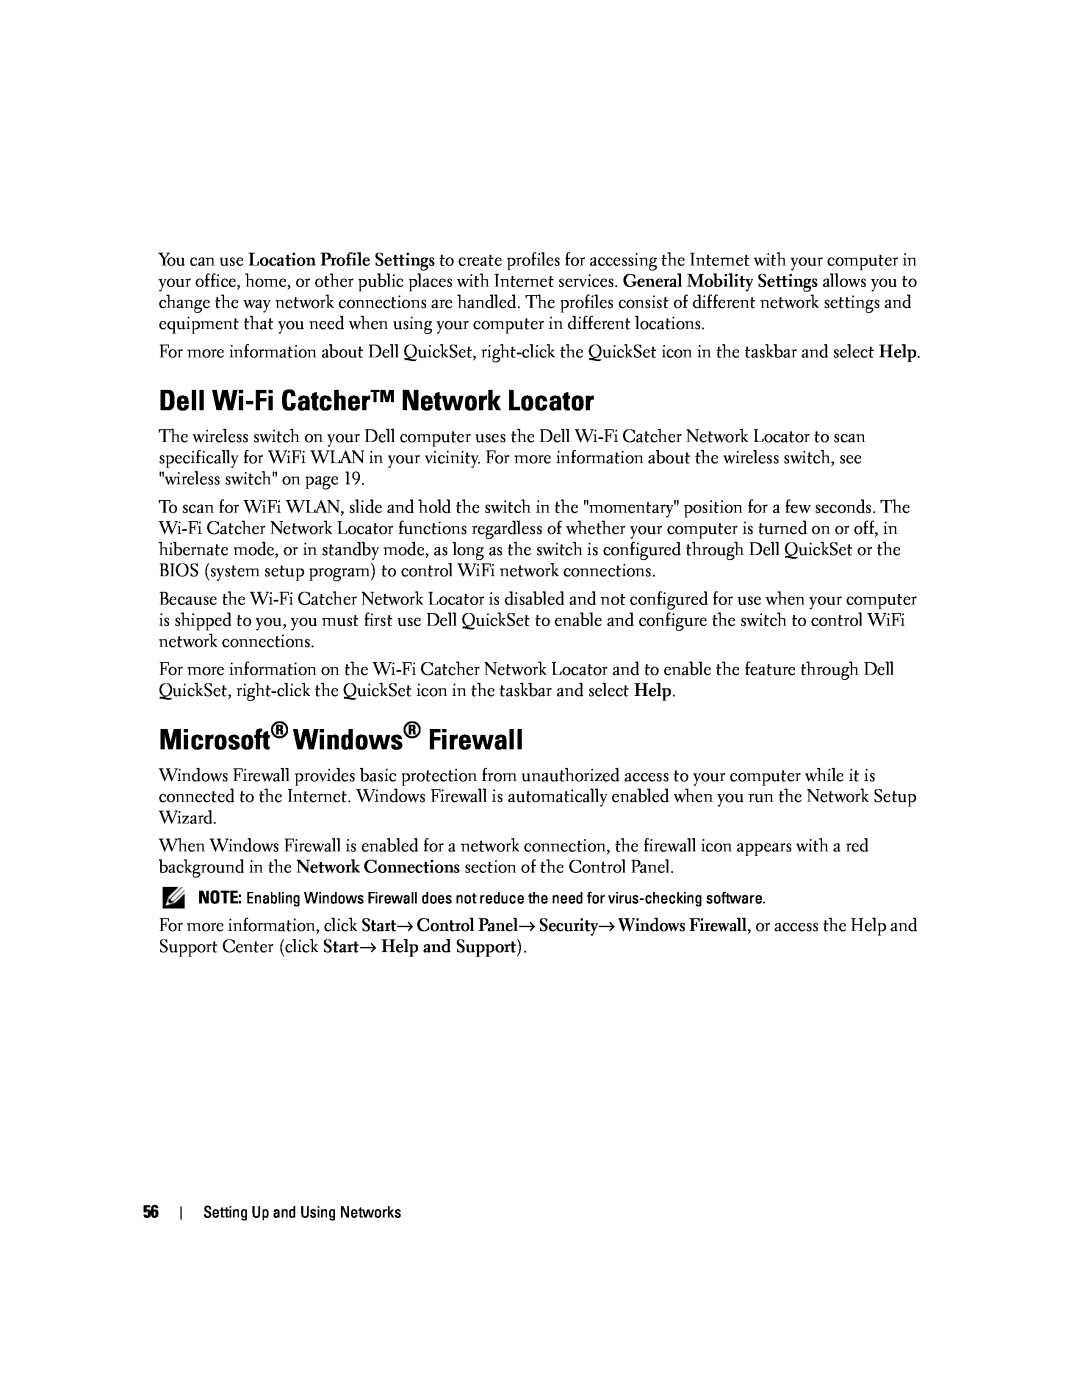 Dell PP24L manual Dell Wi-Fi Catcher Network Locator, Microsoft Windows Firewall 